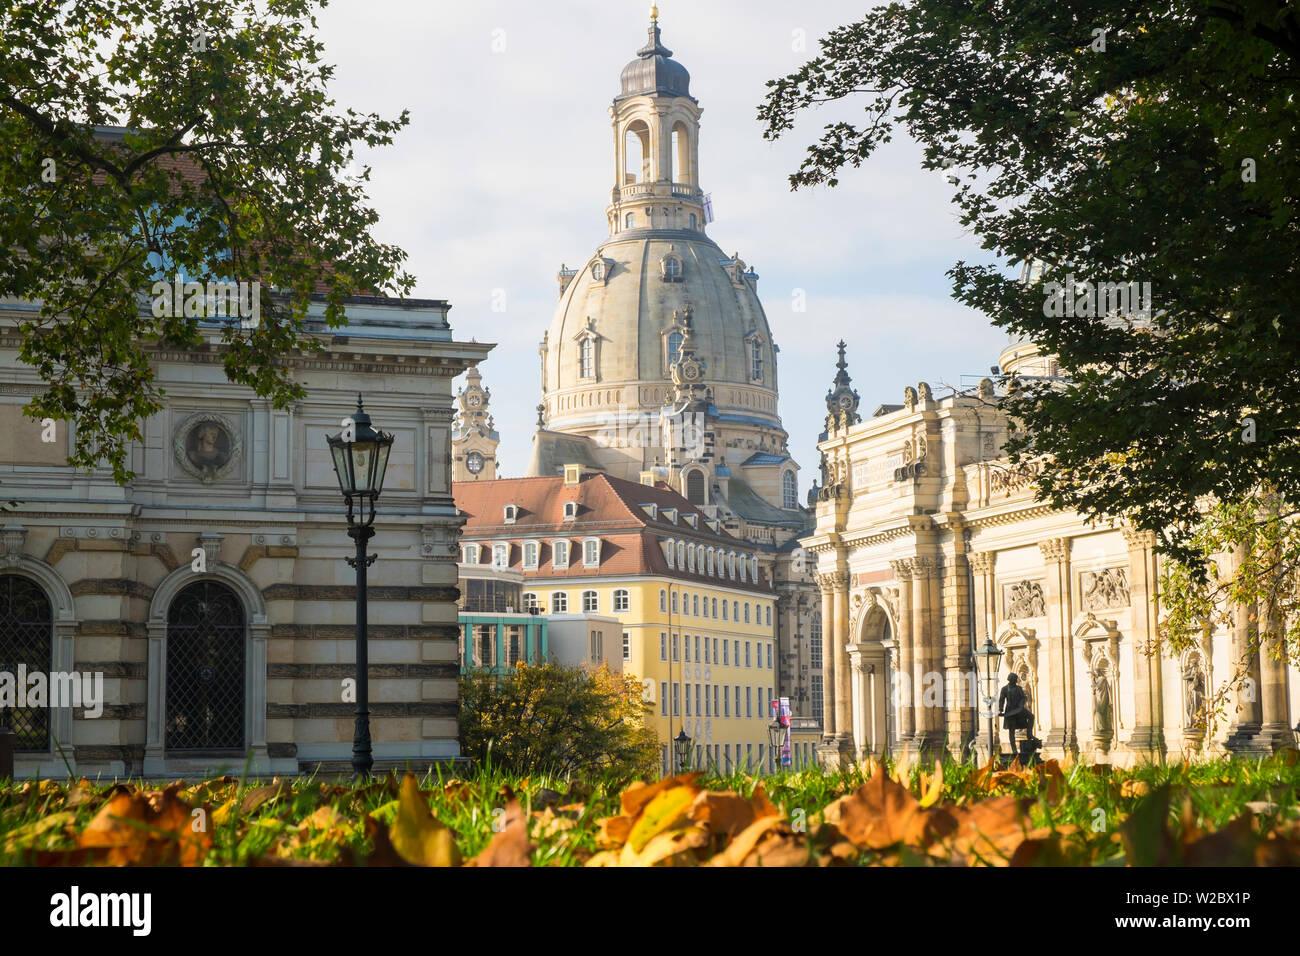 La faculté des beaux-arts et l'église Frauenkirche, automne, Dresden, Allemagne Banque D'Images